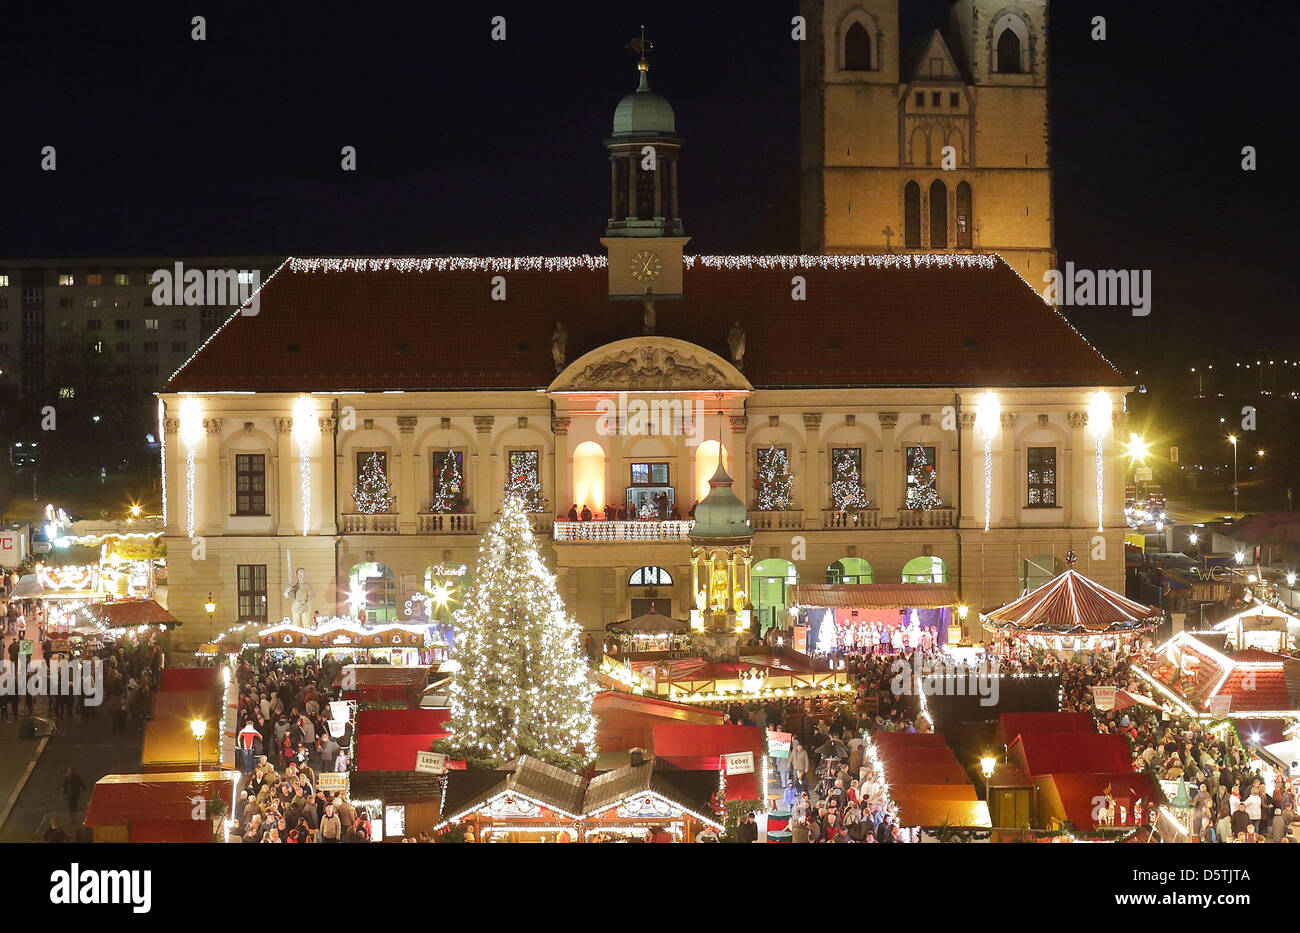 Der Weihnachtsmarkt mit leuchtenden Lichter, Buden und ein Baum ist das Rathaus in Magdeburg, Deutschland, 26. November 2012 abgebildet. Der Markt bietet 135 Stände, die bis zum 20. Dezember 2012 geöffnet sein wird. Foto: Jens Wolf Stockfoto